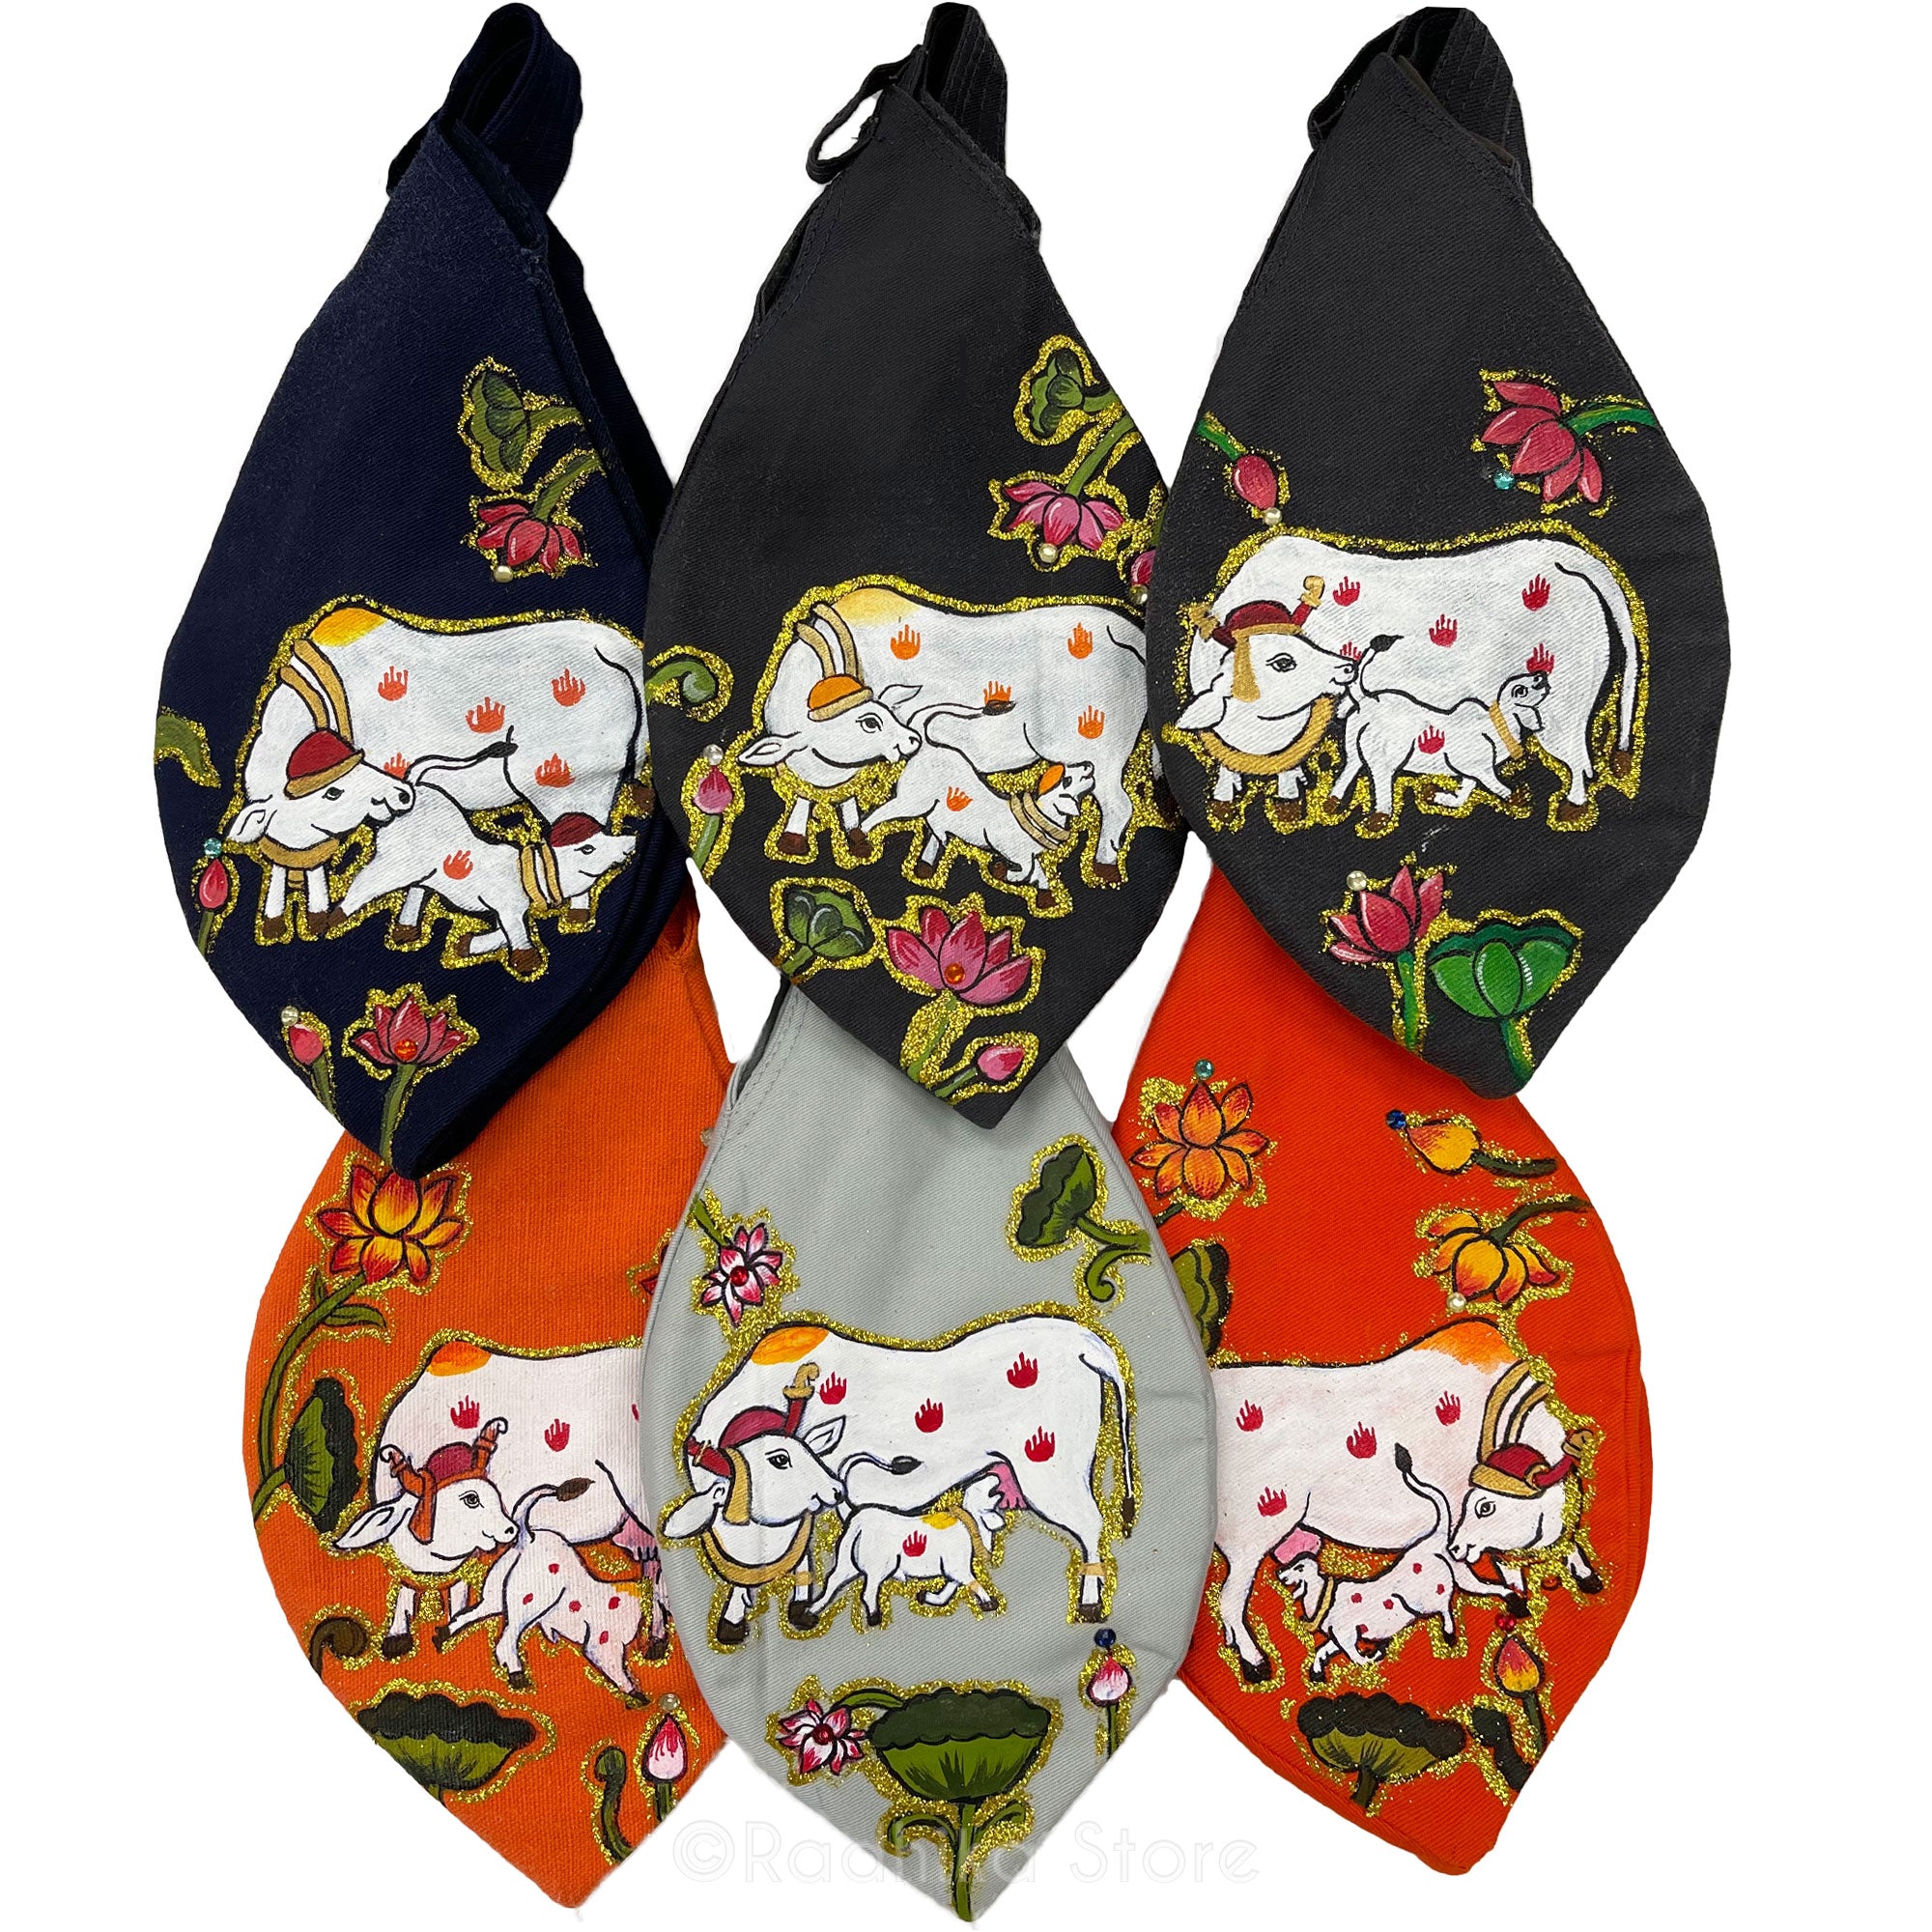 Sparkling Auspicious Surabhi Cows - Thick Cotton - Hand Painted Bead Bag- Choose Color